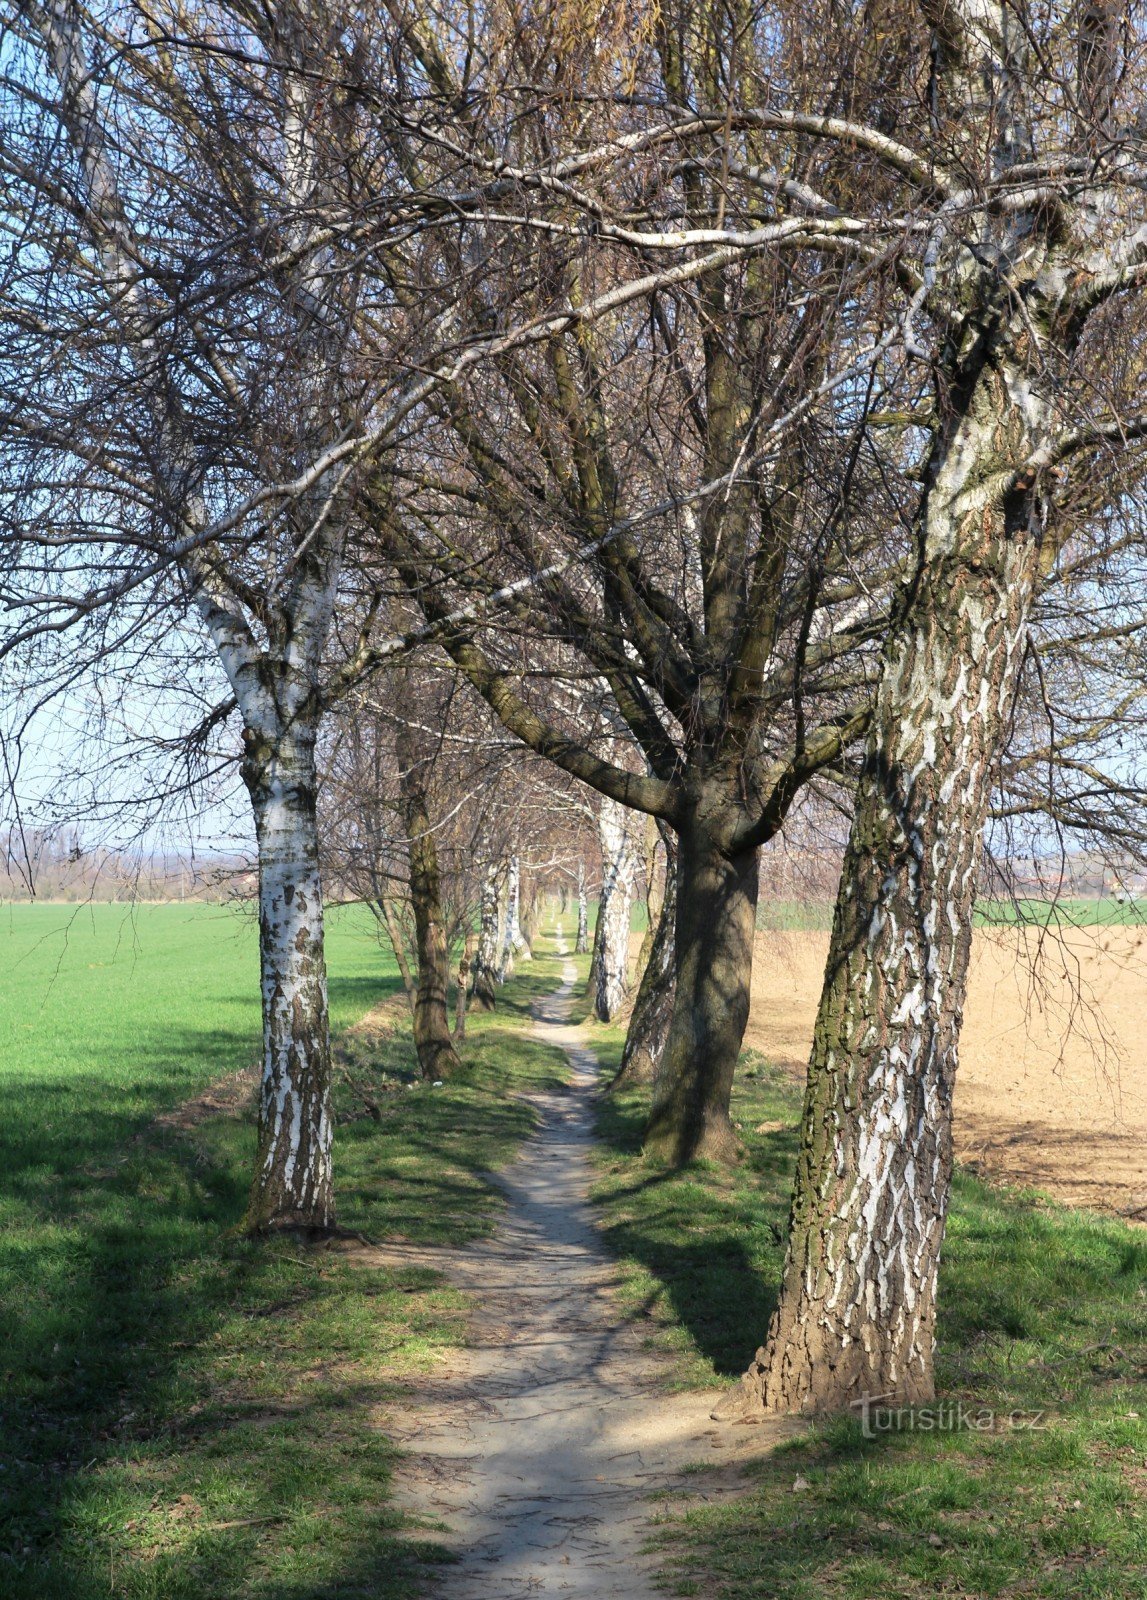 Nykyinen Holasická cesta on luonteeltaan enemmän jalankulkutietä